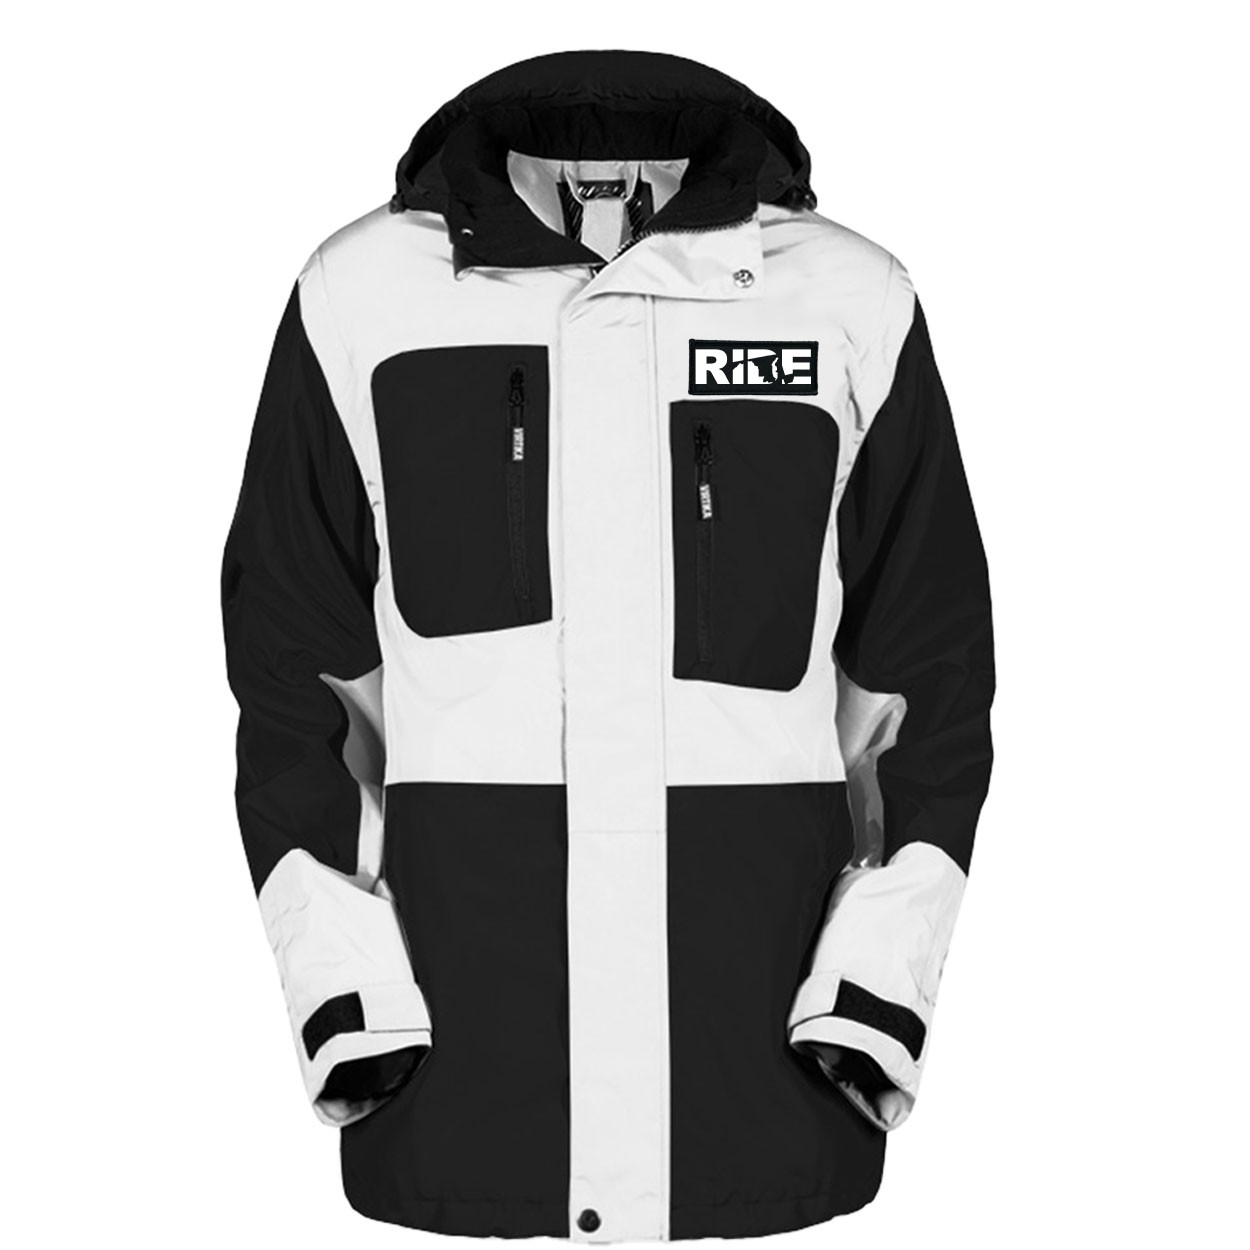 Ride Maryland Pro Waterproof Breathable Winter Virtika Jacket Black/White (White Logo)